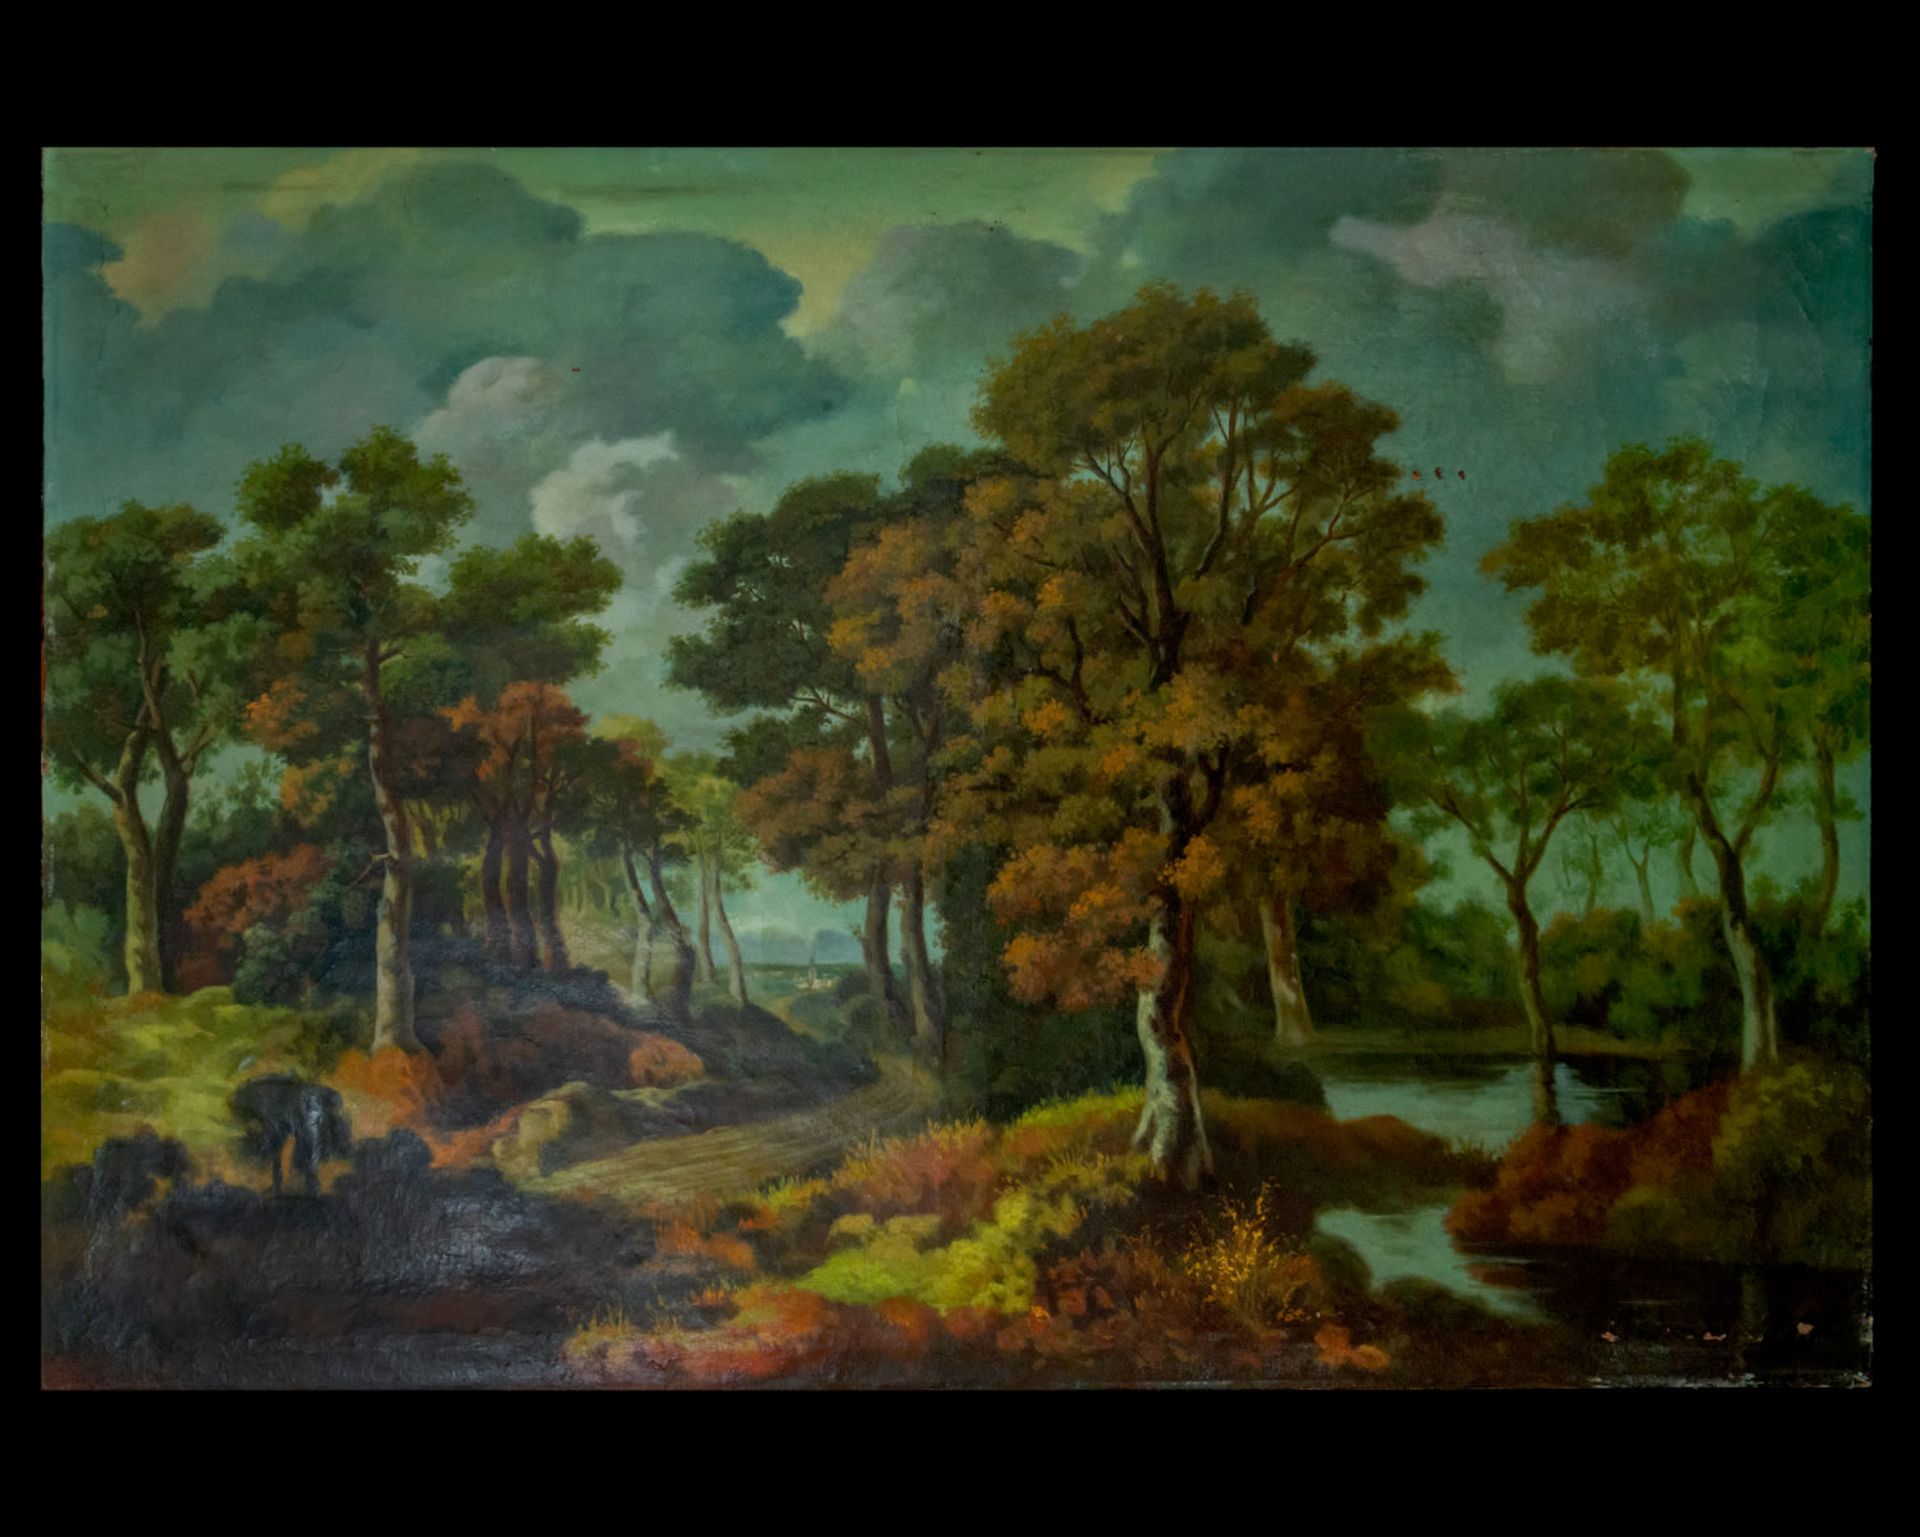 River landscape, 18th century, Flemish school